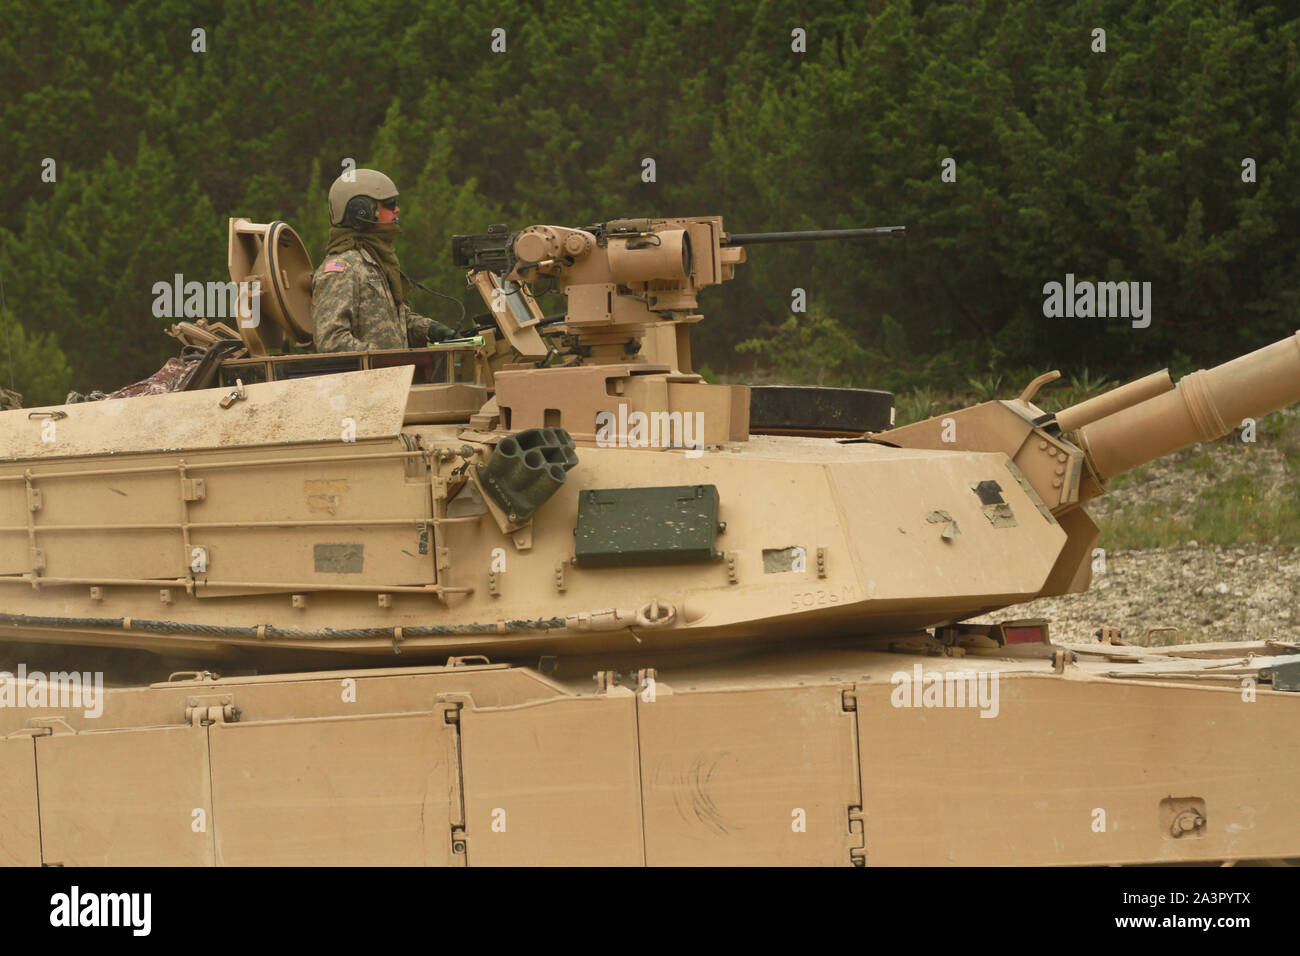 Soldaten in den 2. gepanzerte Brigade Combat Team zugewiesen sind, 1.Kavallerie Division Verhalten schießwesen Qualifikationen Abrams Tank crews zu zertifizieren und die Bereitschaft in der Ausbildung von Fort Hood, Tx. Juni 23, 2019. Stockfoto